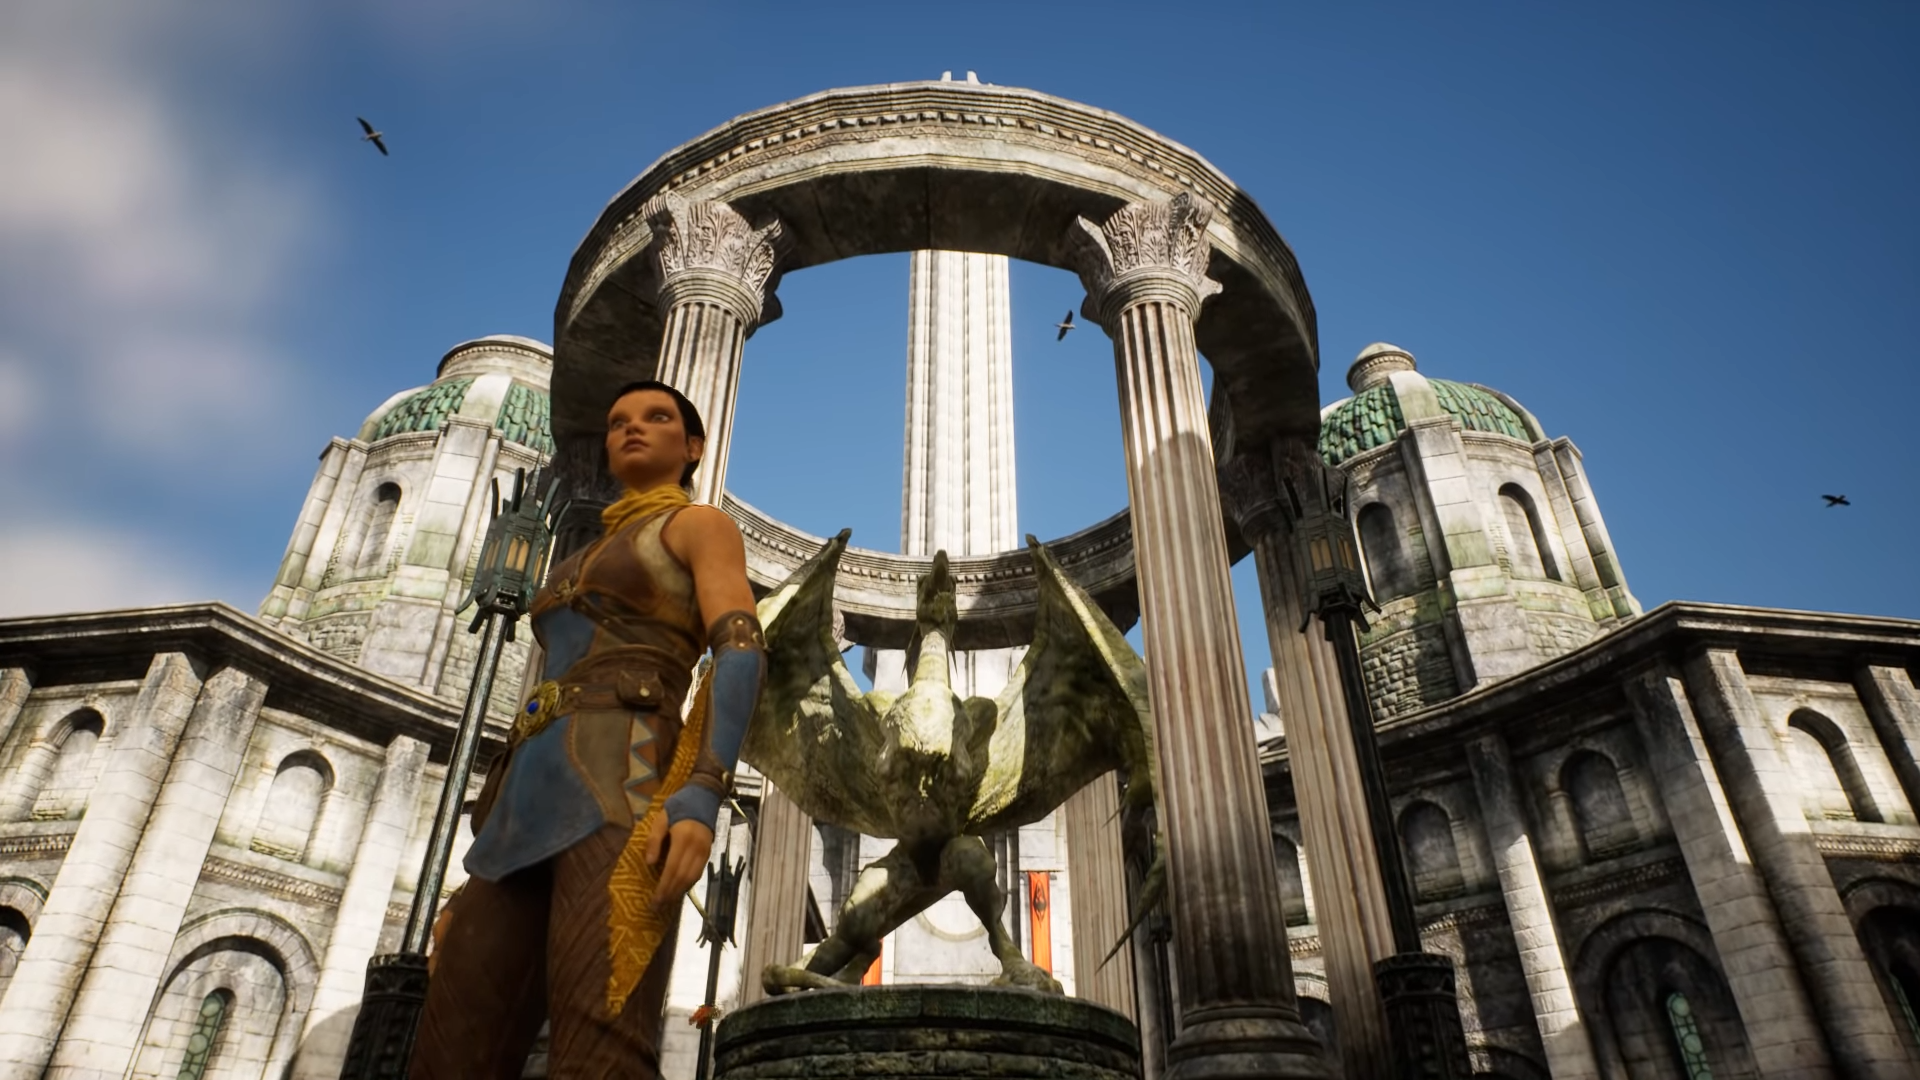 Bilder zu The Elder Scrolls IV: Oblivion in der Unreal Engine 5 - so sieht die Imperial City heute aus